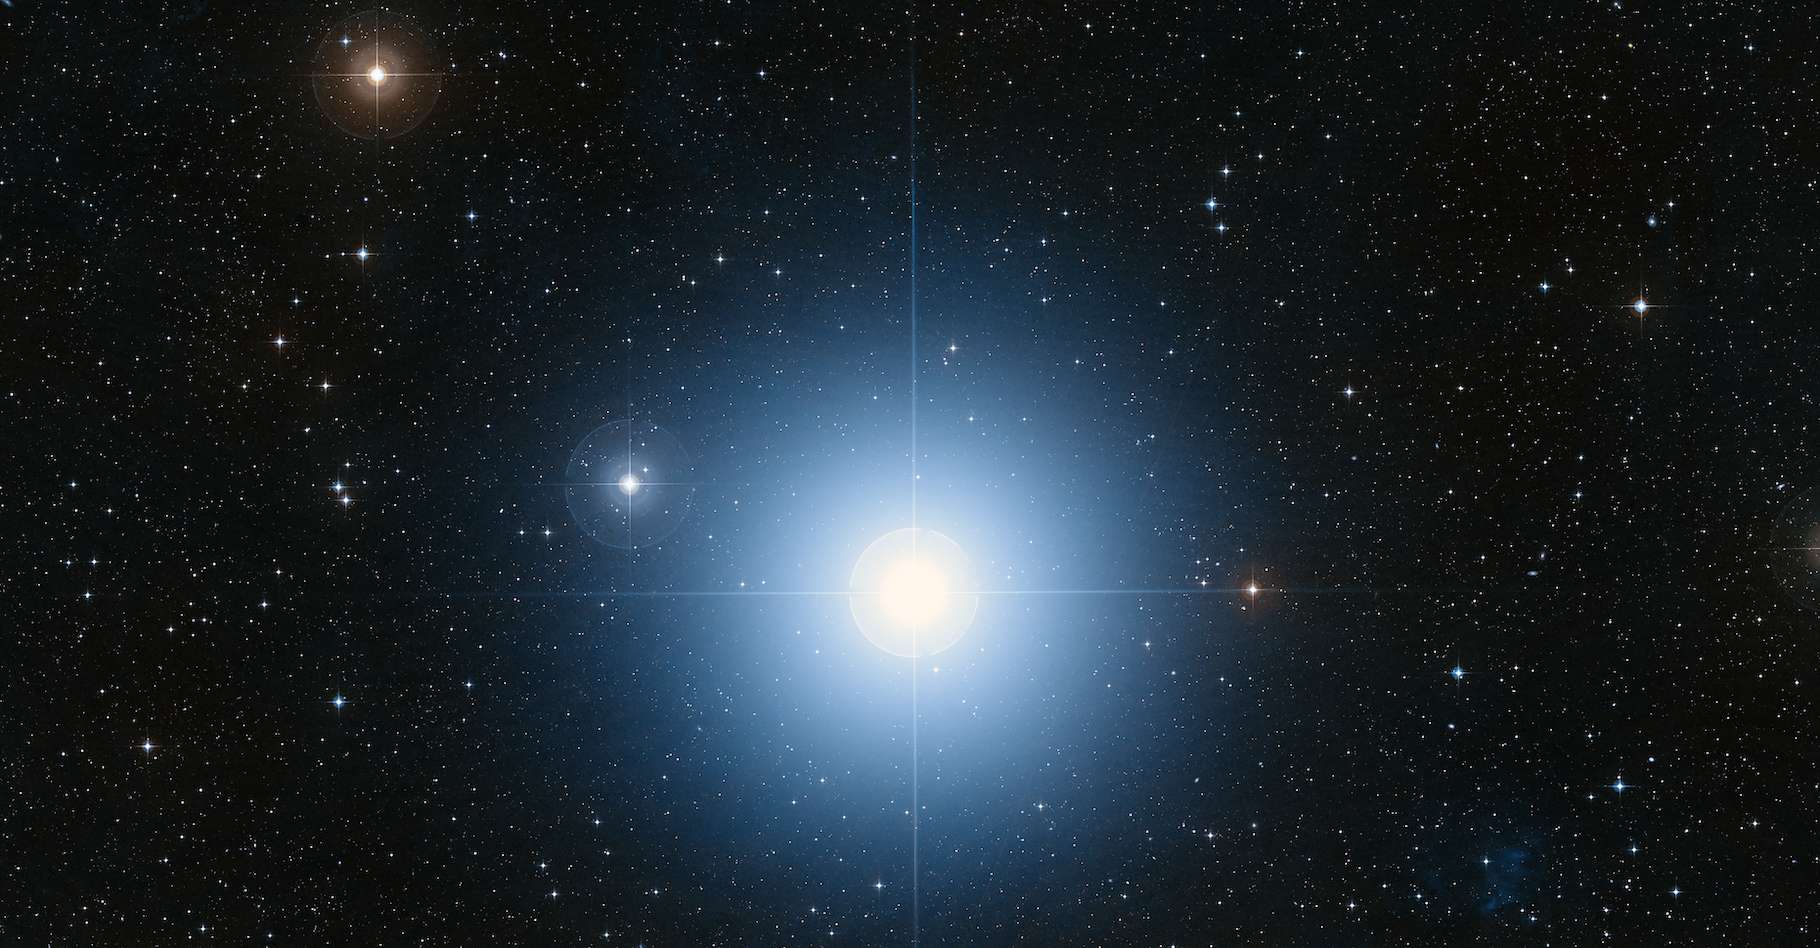 El cinturón de asteroides observado por el telescopio James-Webb desconcierta a los astrónomos